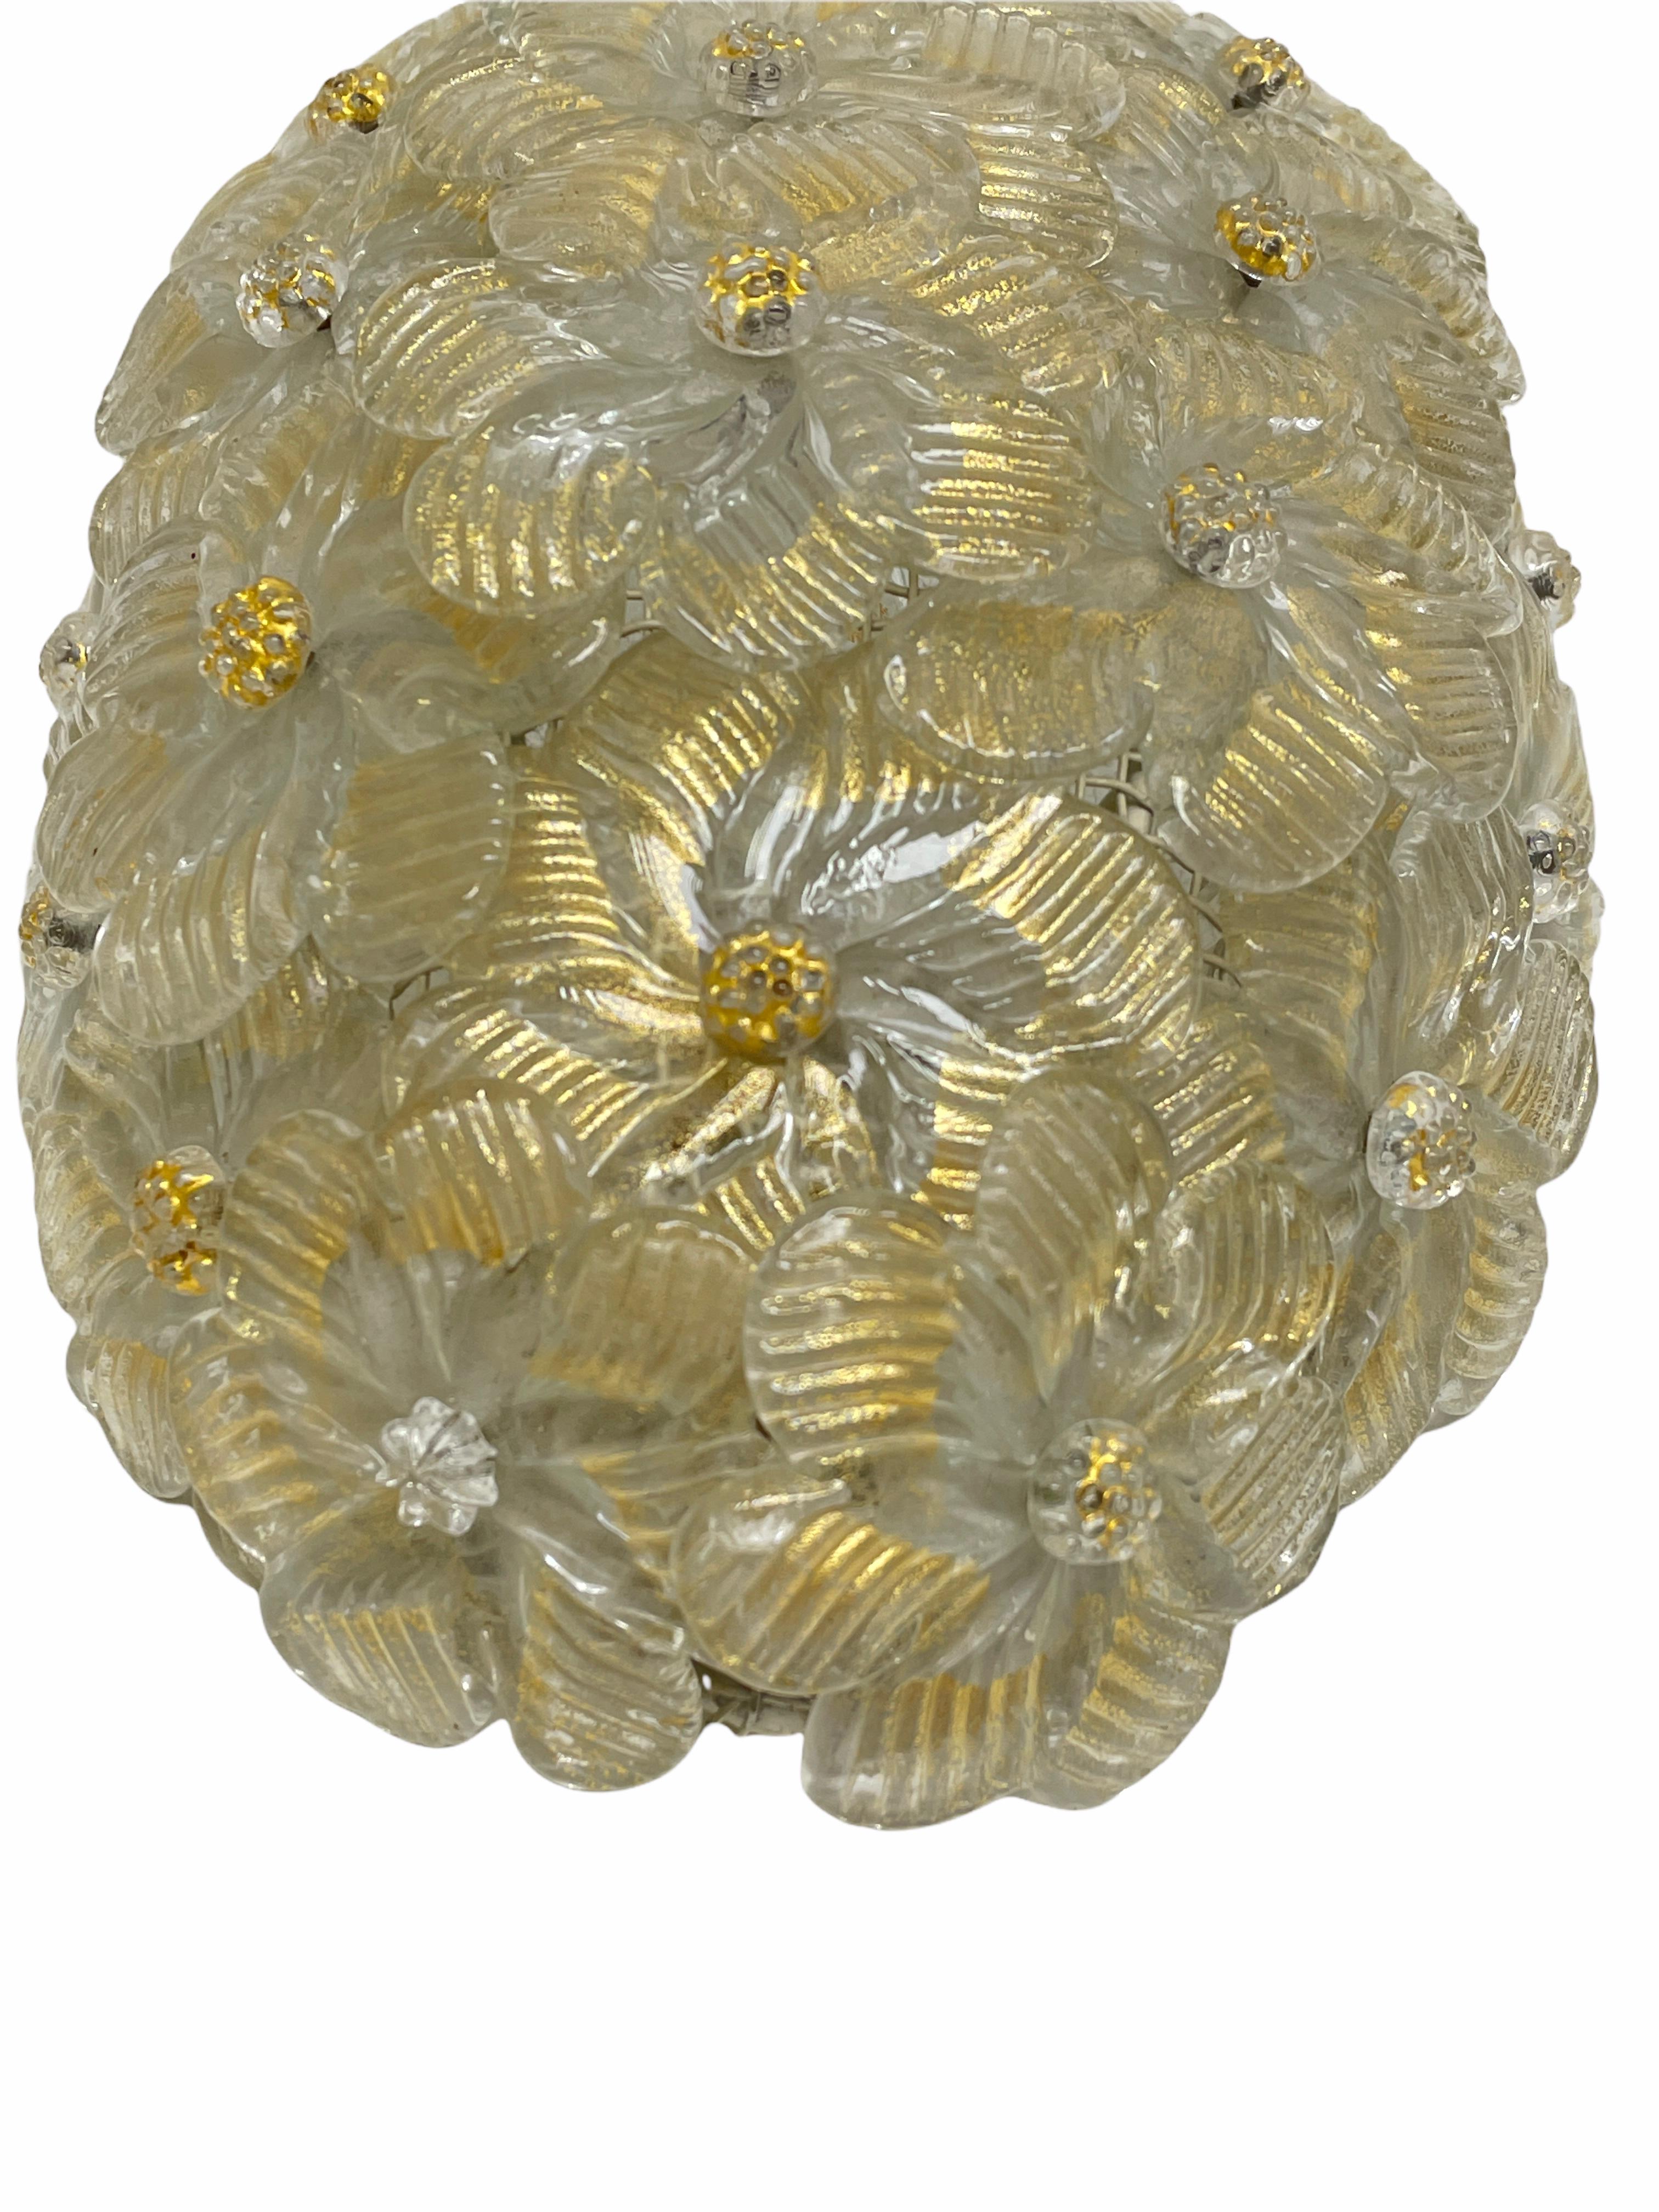 Ein wunderschöner mundgeblasener italienischer Wandleuchter mit überlappenden Kristallblumen, Gold mit 23-karätigen Blattgoldeinschlüssen, montiert auf einem Korbrahmen. Die Leuchte benötigt eine europäische E14 / 110 Volt Kandelaberlampe, bis zu 60